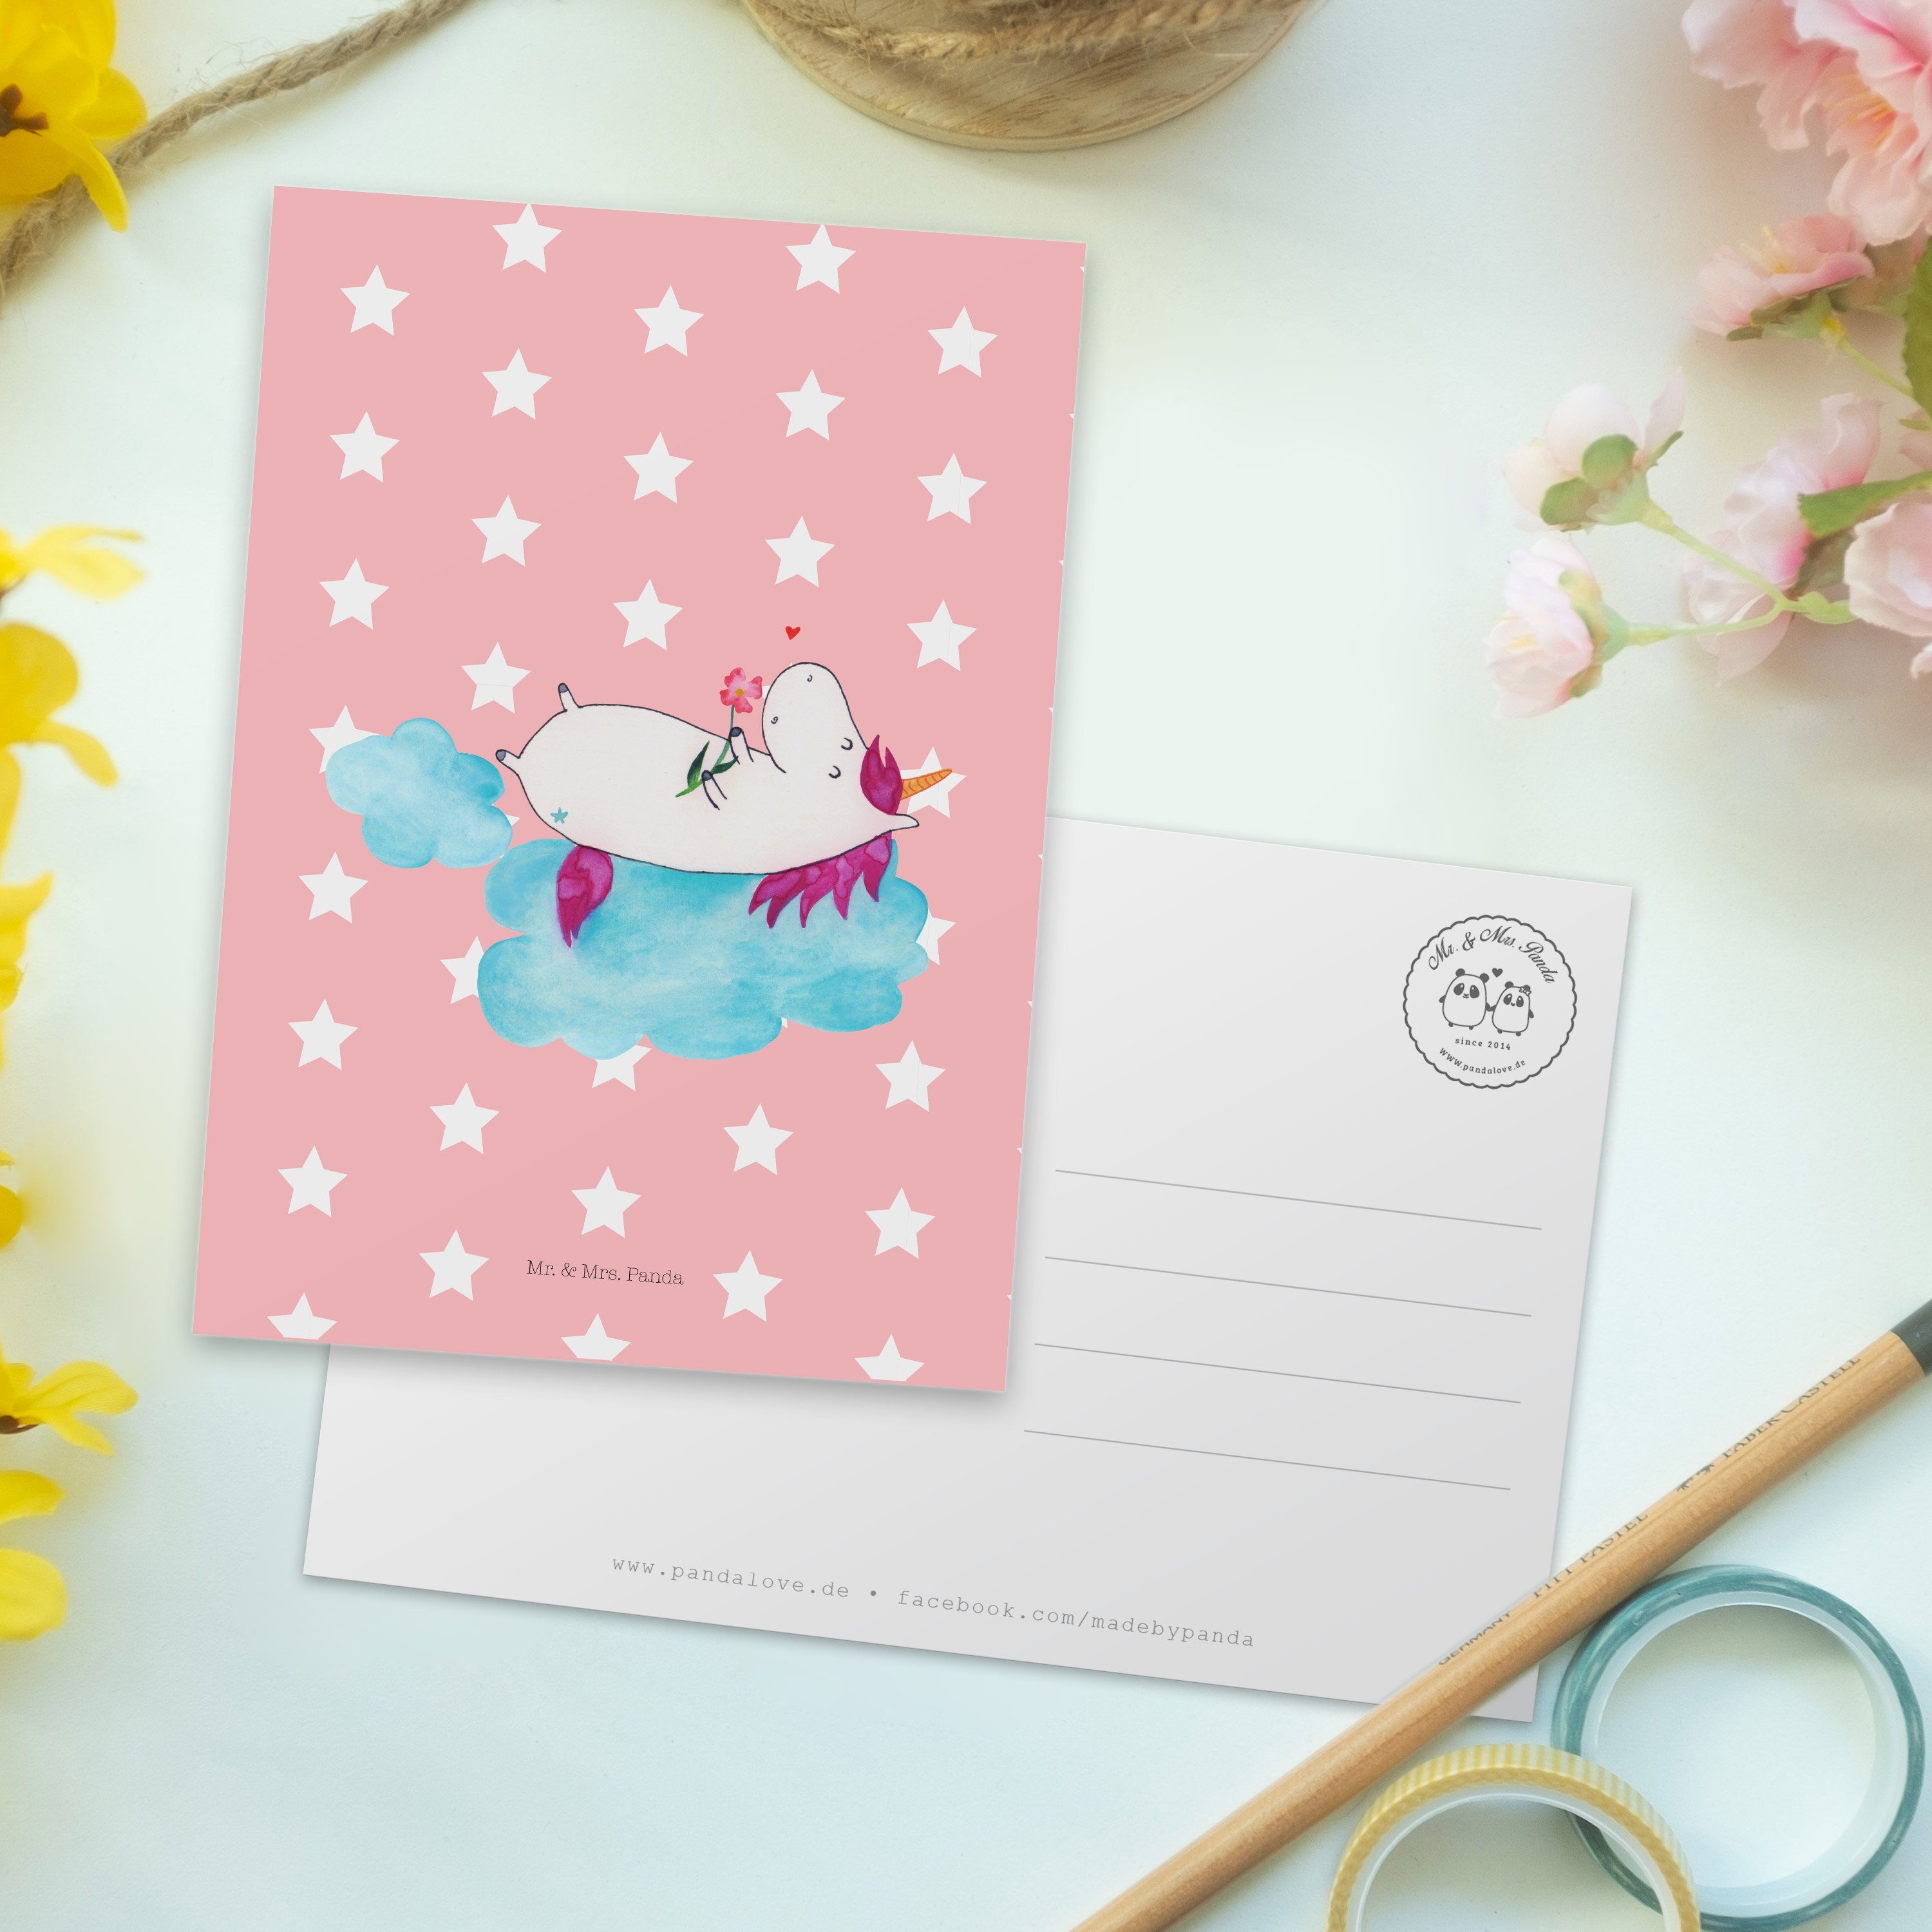 Mr. & - Mrs. Panda verliebt - auf Karte, Geschenk, Pastell Postkarte Geschenkk Einhorn Rot Wolke